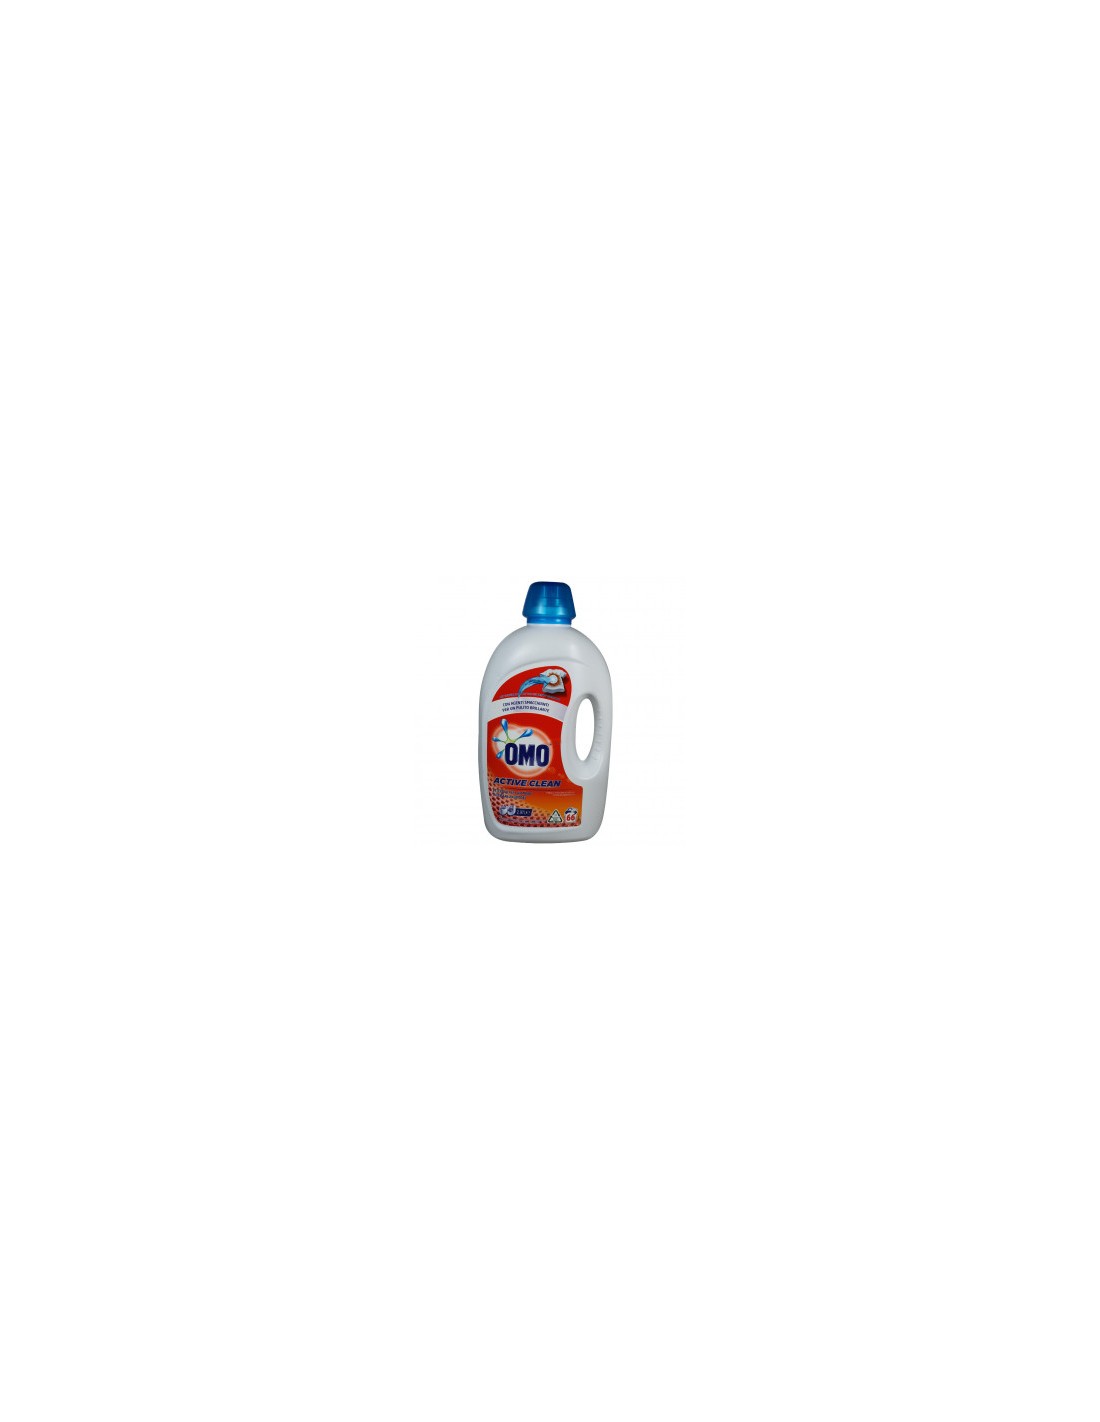 Omo lessive liquide Active Clean, 5 l